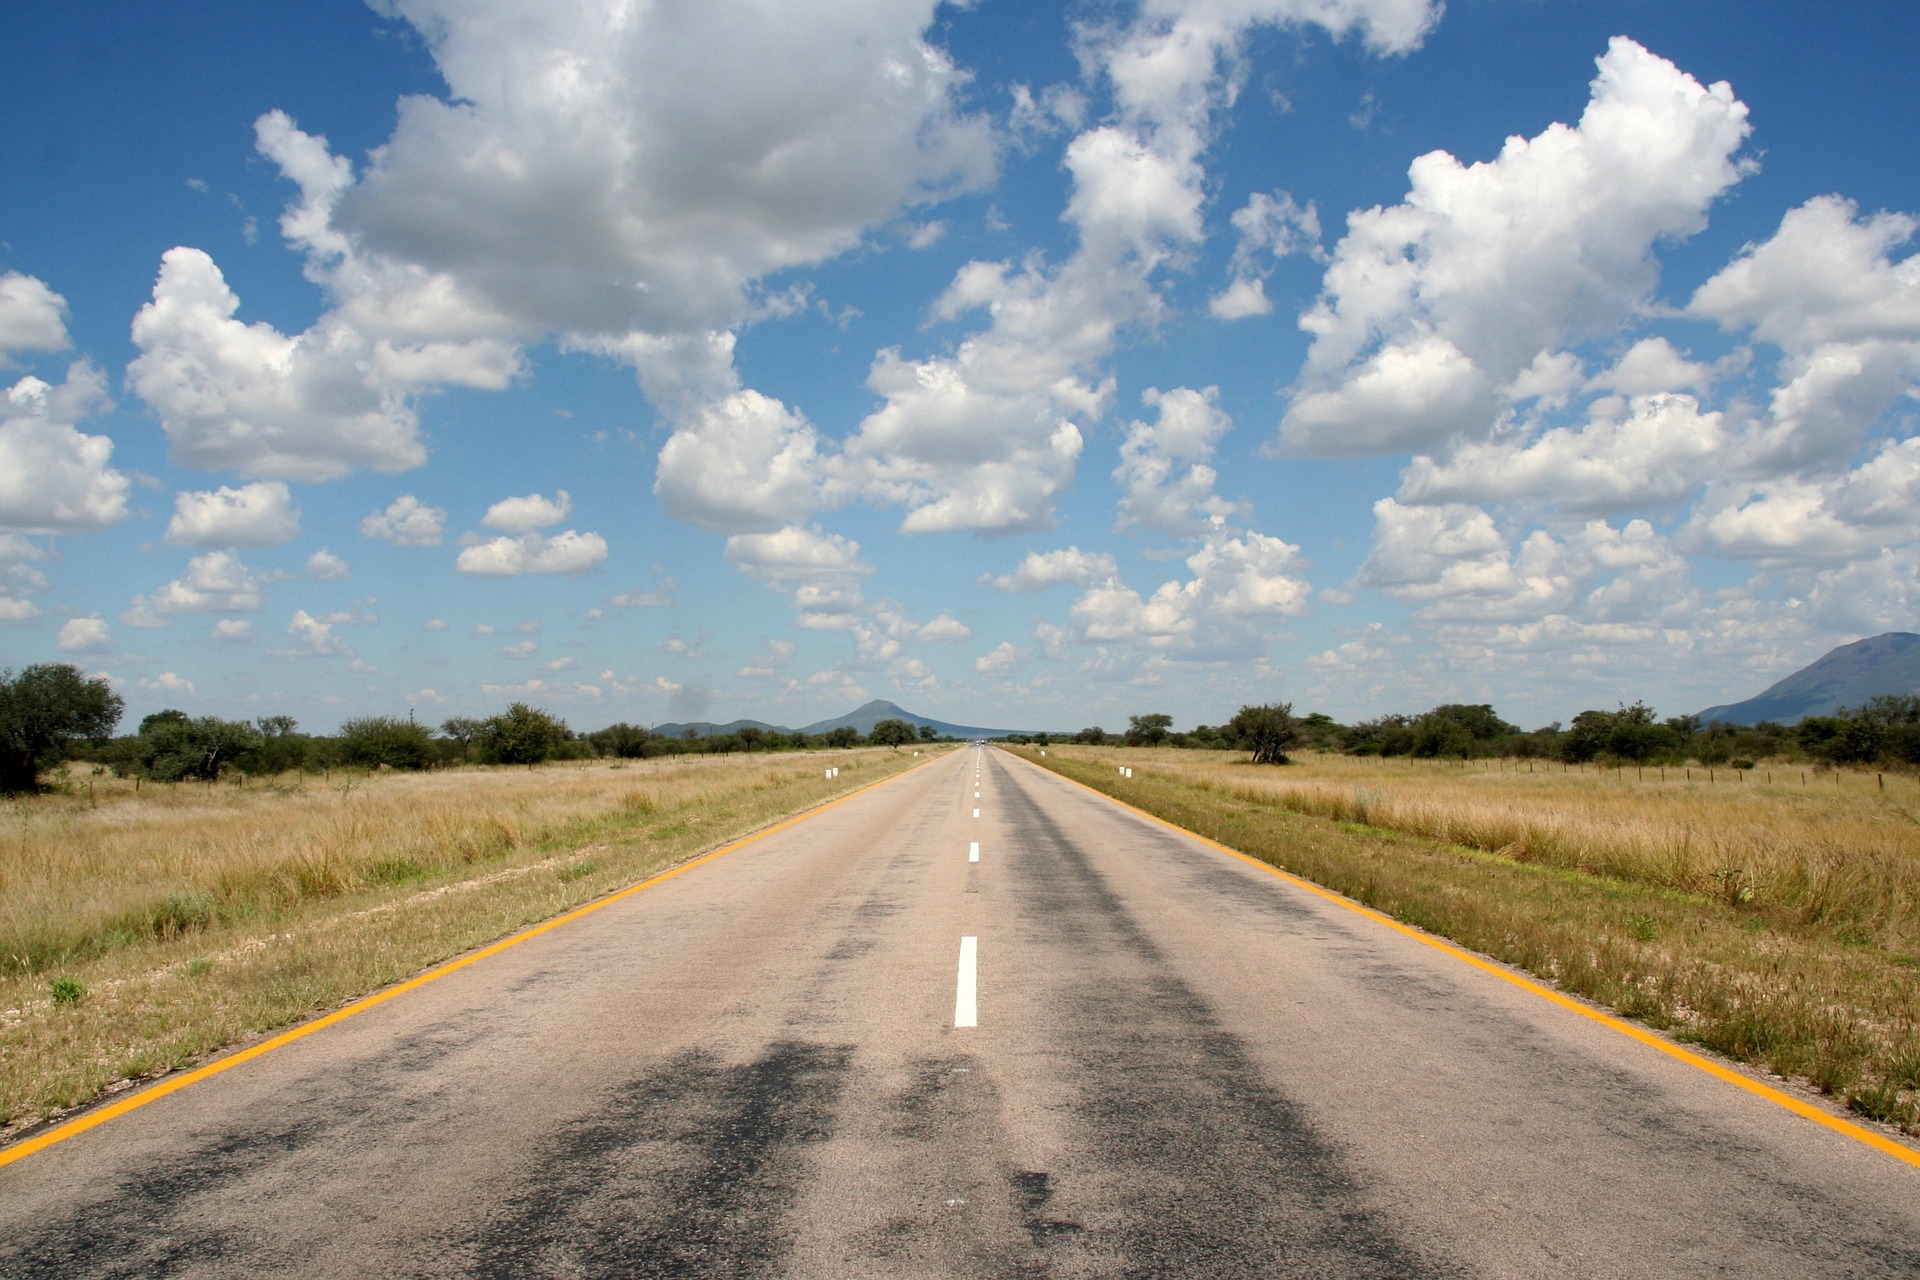 Mozambique destina 288 millones de euros a rehabilitar carreteras rurales y puentes